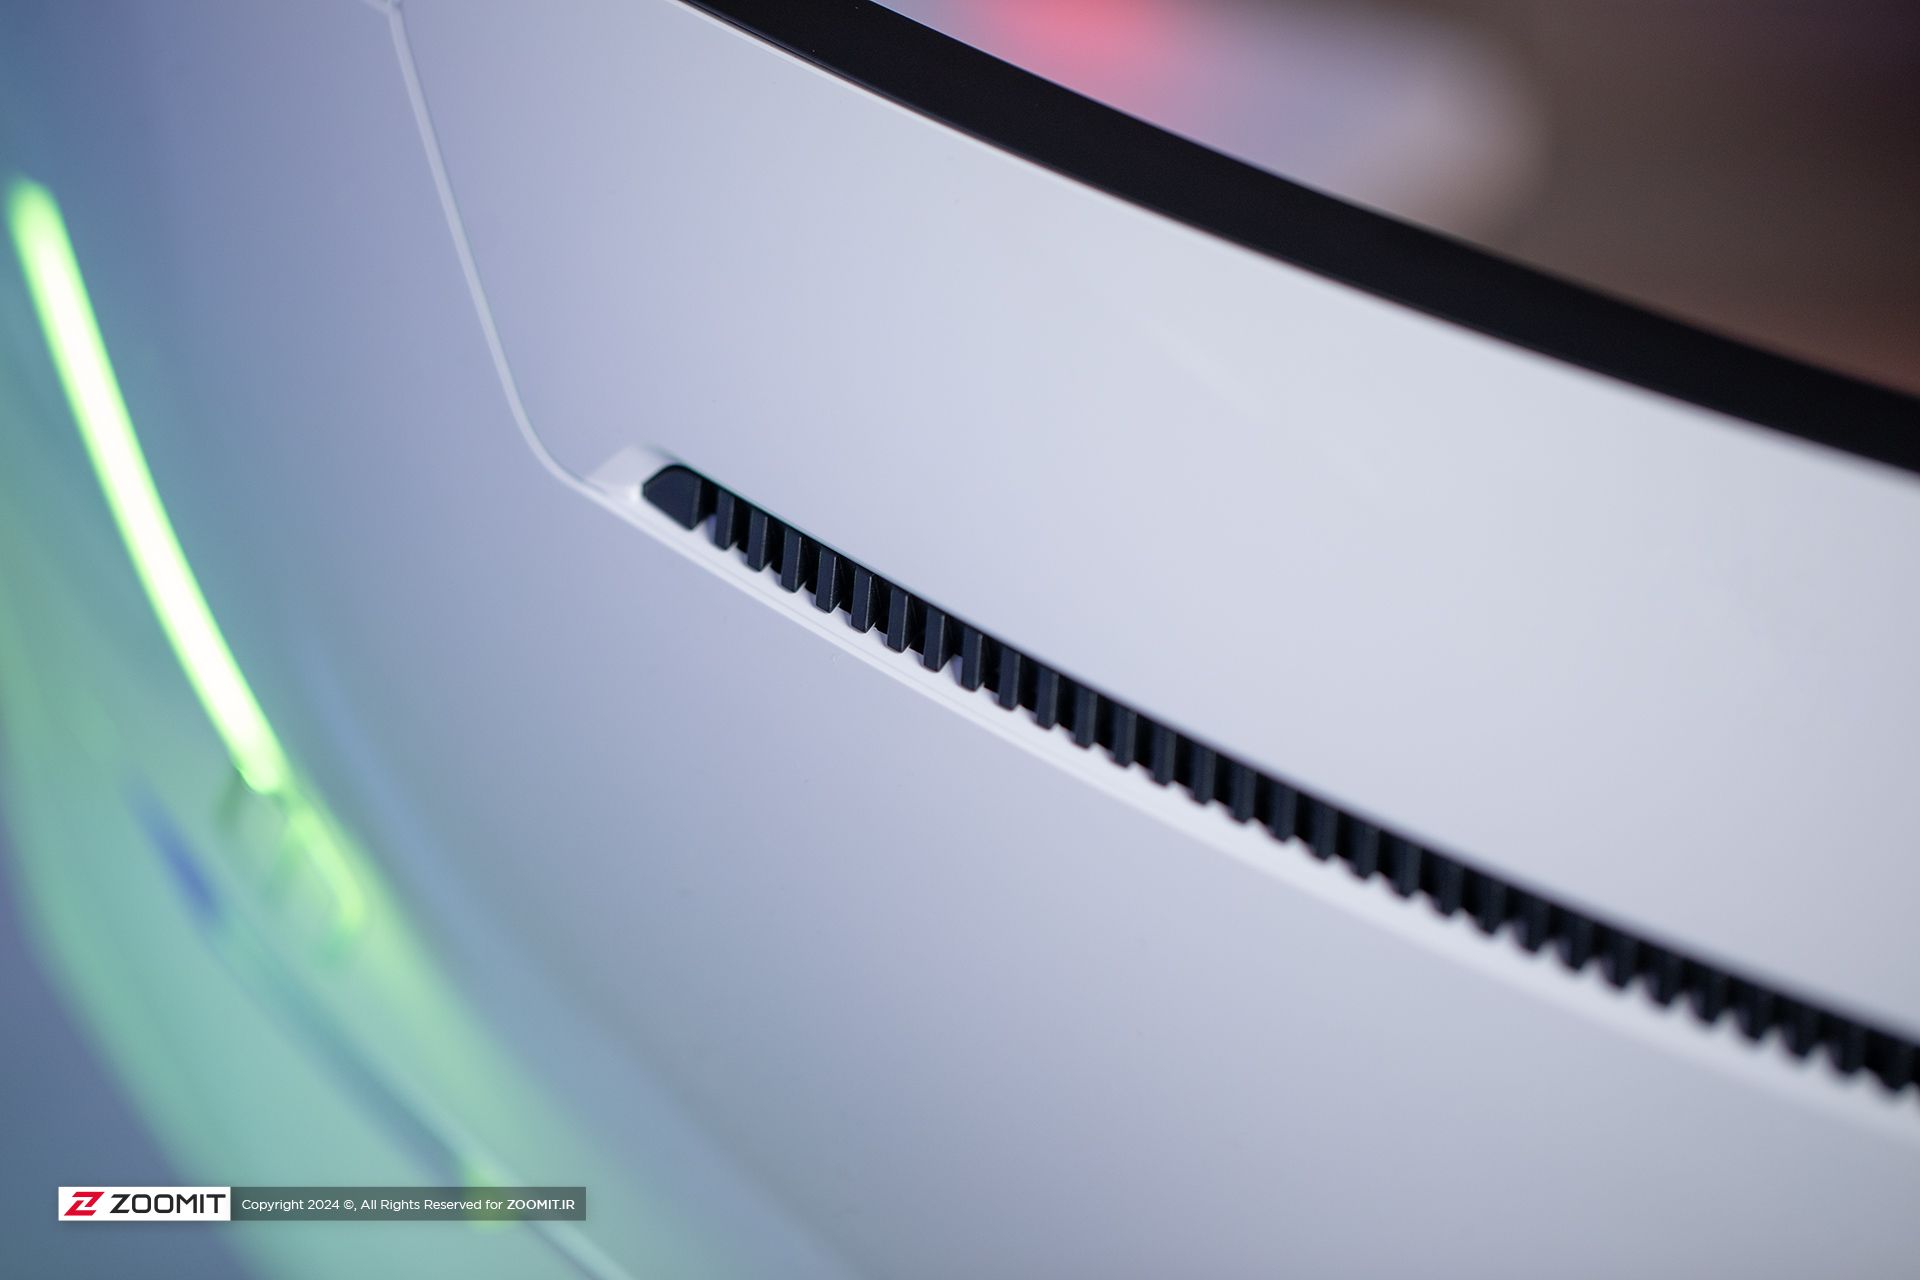 خروجی جریان هوا در پنل پشت مانیتور Odyssey Neo G9 سامسونگ